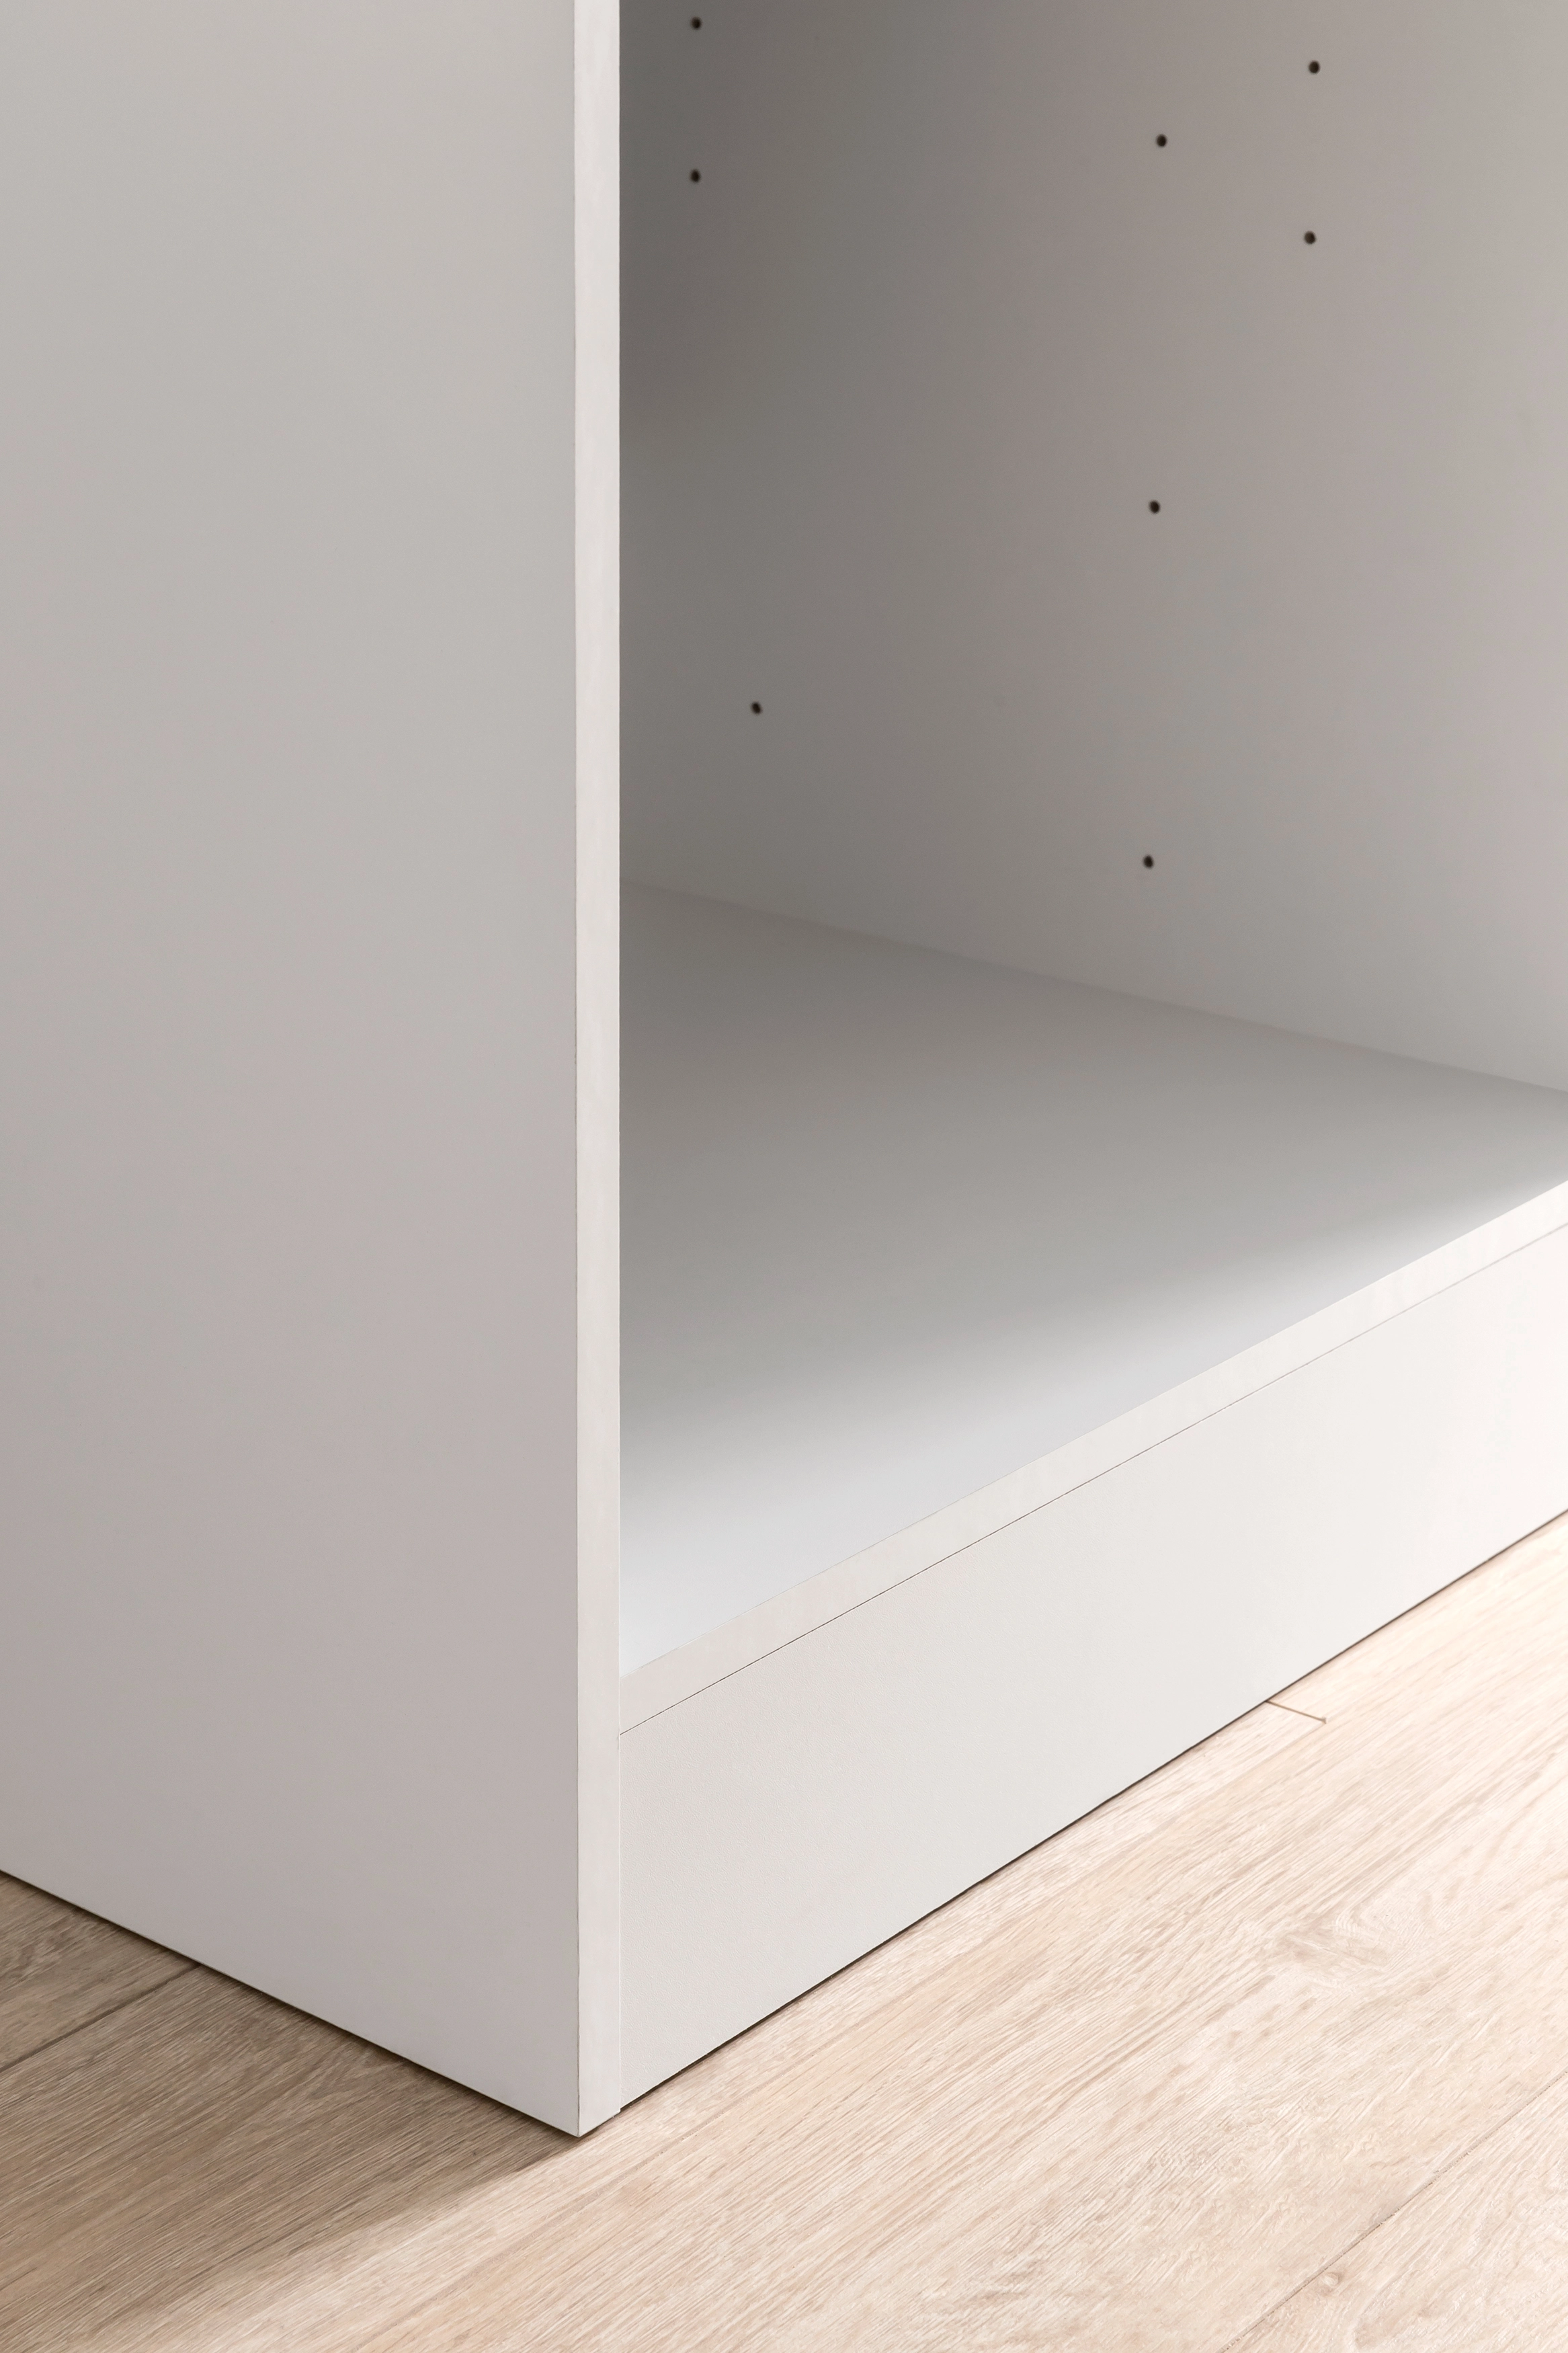 Held Möbel Küchenunterschrank Mailand 50 cm Tür/Schubkasten Hochglanz Weiß/ Weiß kaufen bei OBI